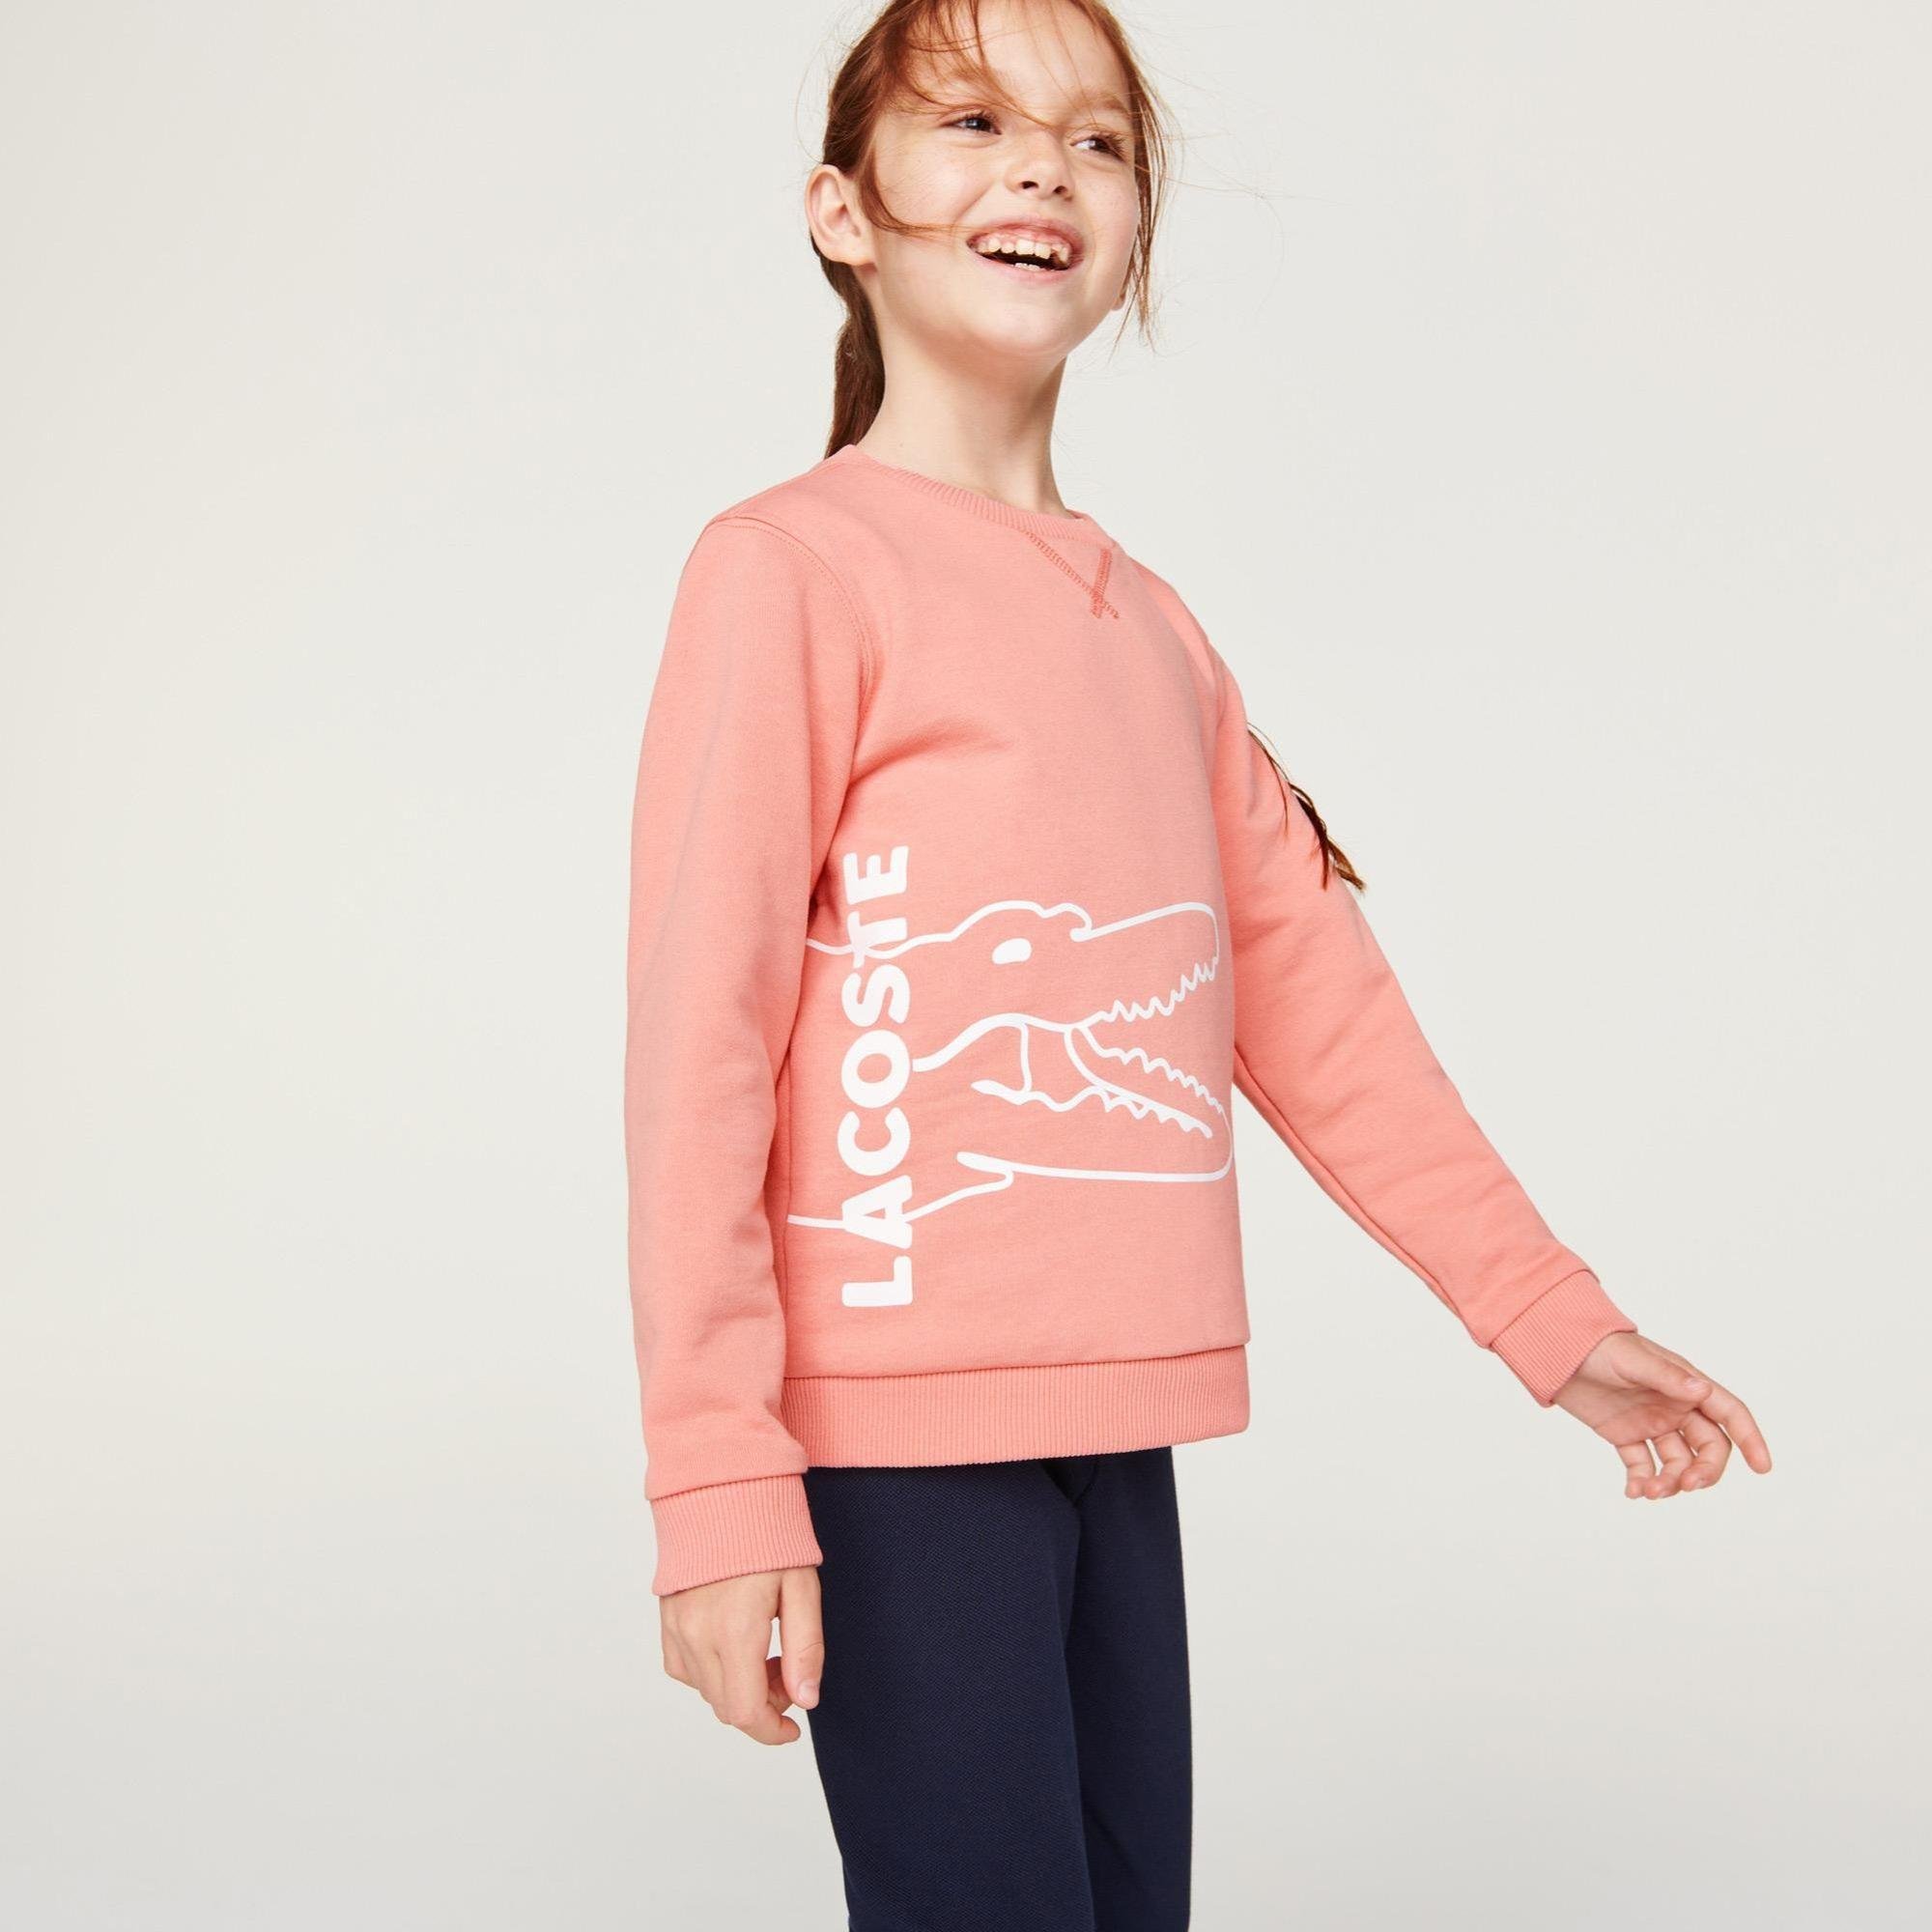 Lacoste Kids’ Lettered Fleece Sweatshirt